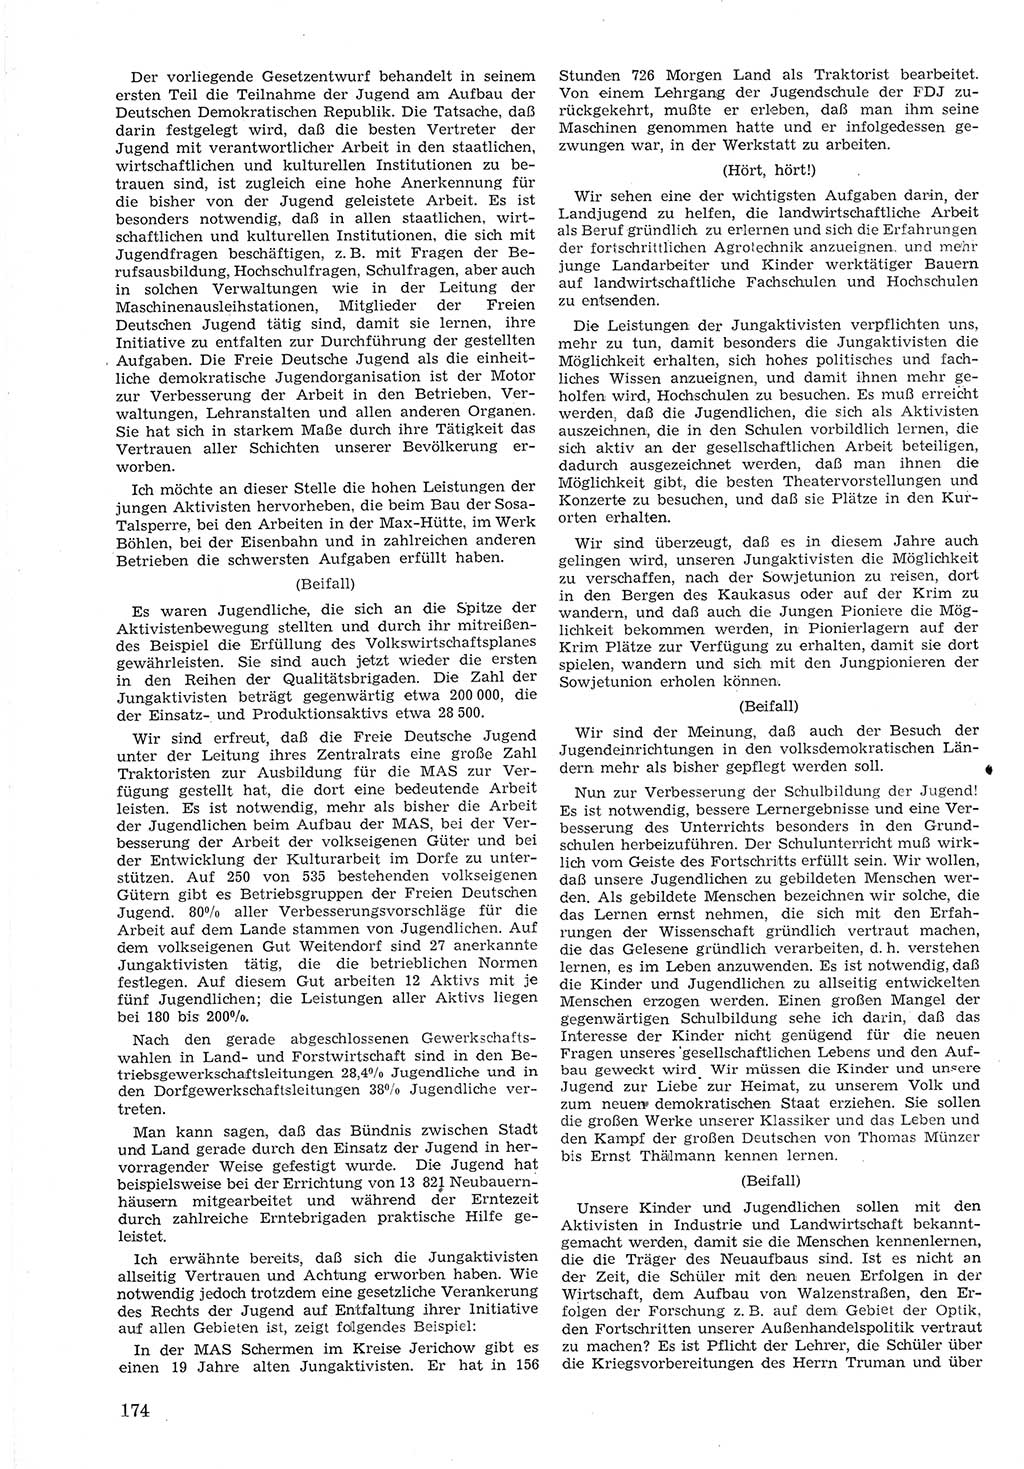 Provisorische Volkskammer (VK) der Deutschen Demokratischen Republik (DDR) 1949-1950, Dokument 186 (Prov. VK DDR 1949-1950, Dok. 186)